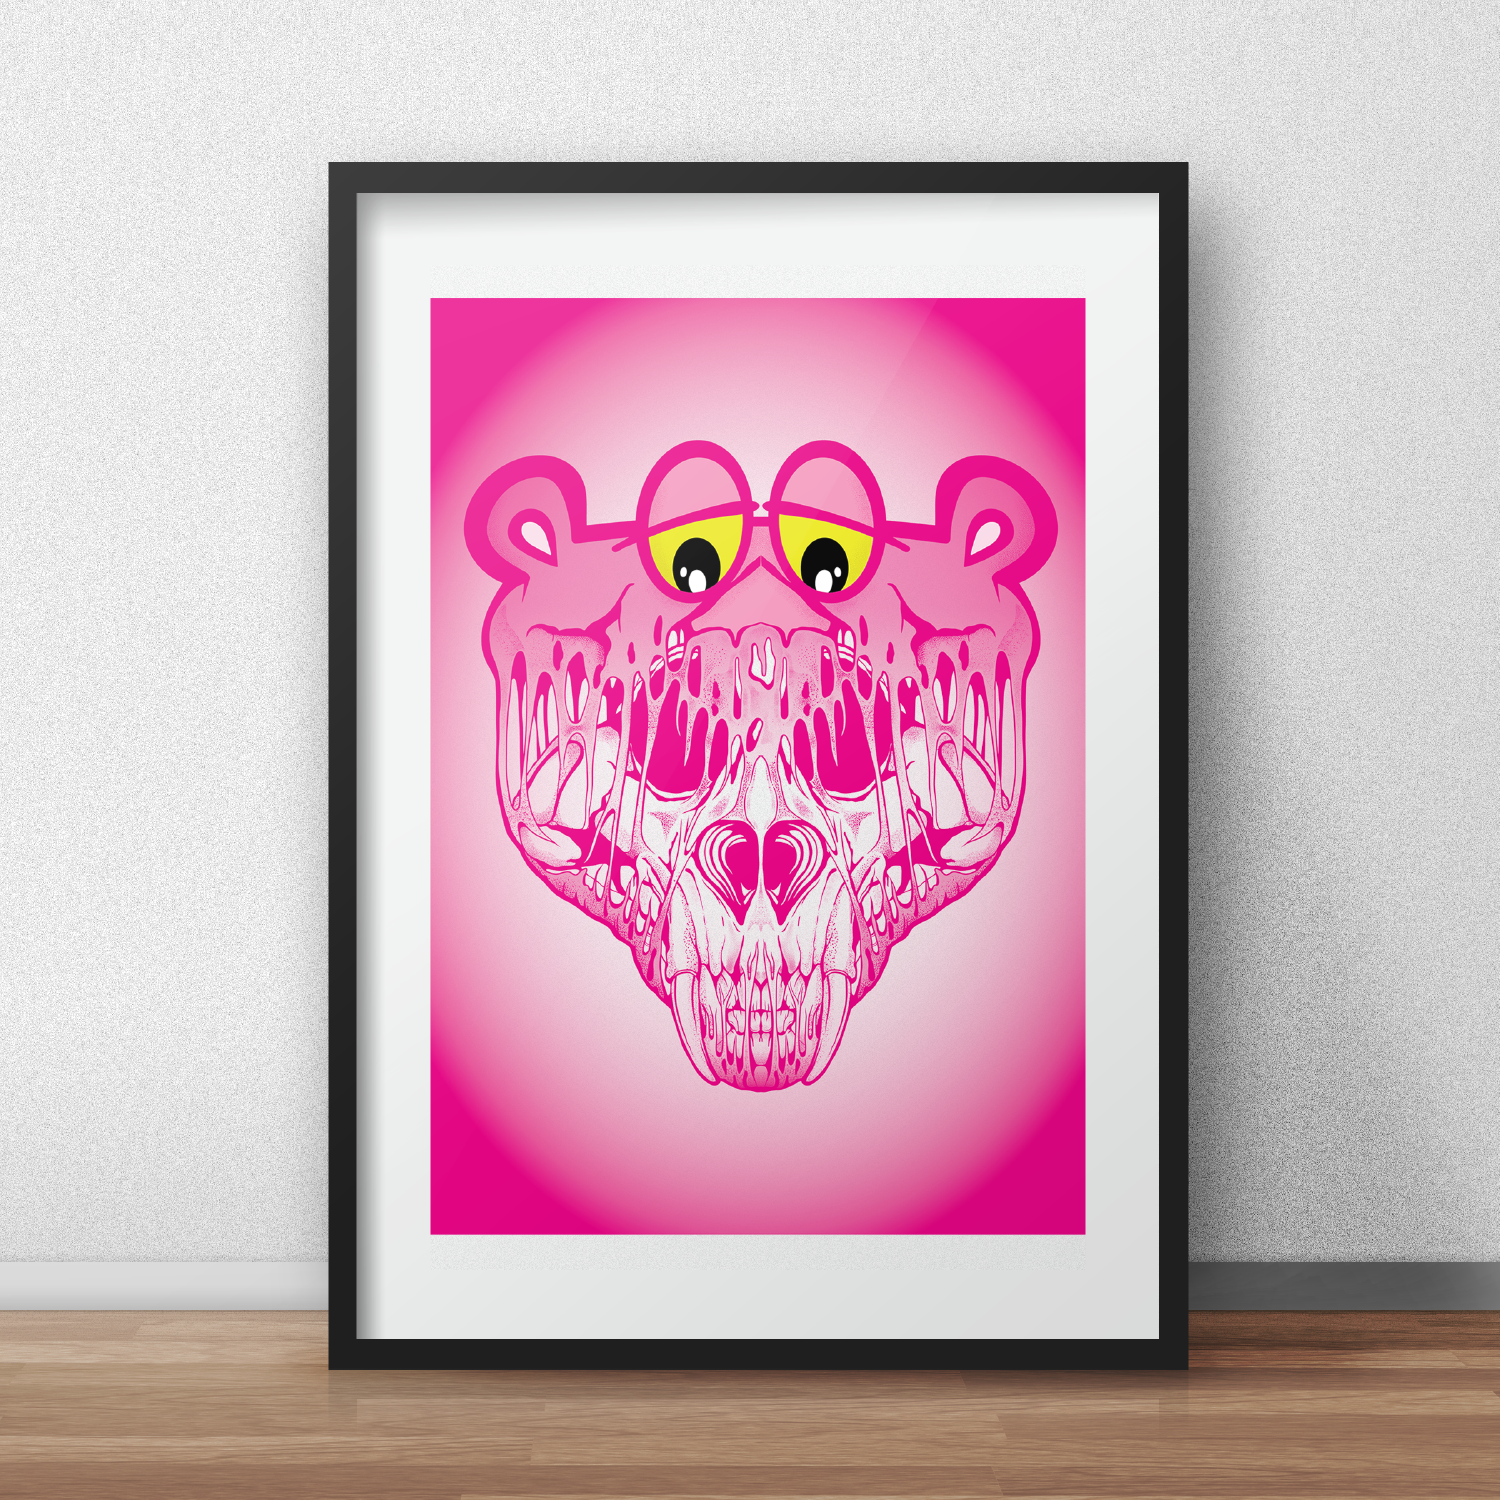 pink panther drawing